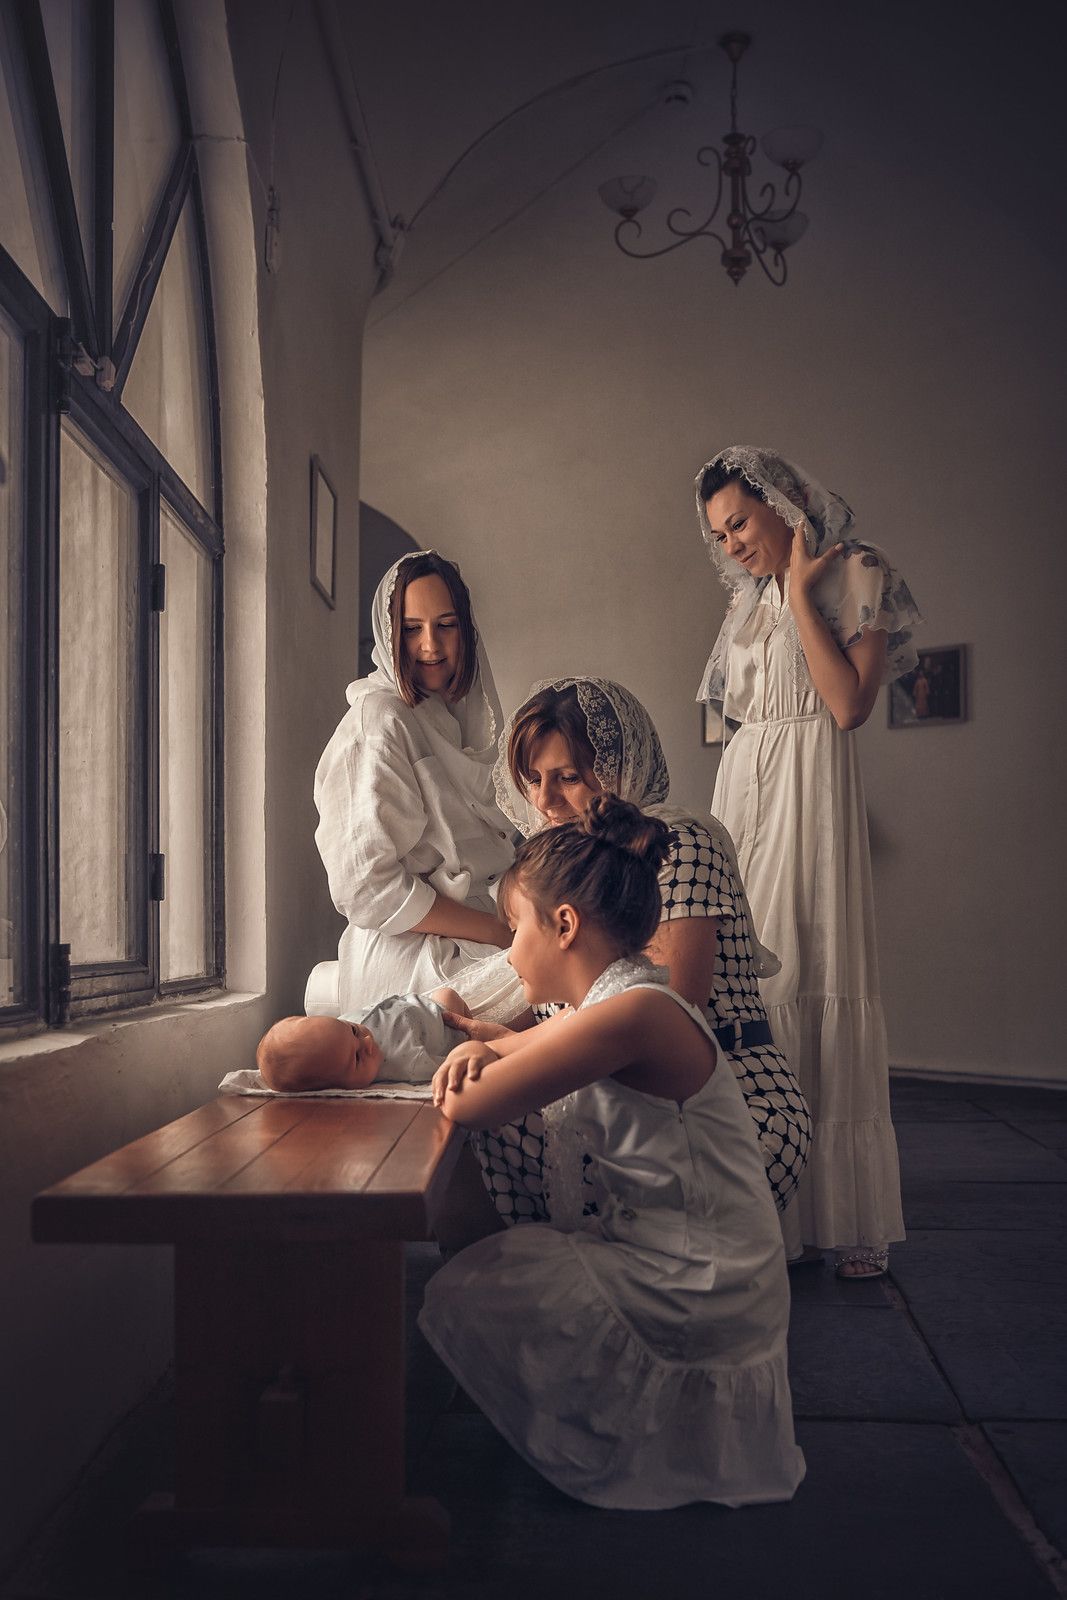 Таинство крещения в Старочеркасском соборе